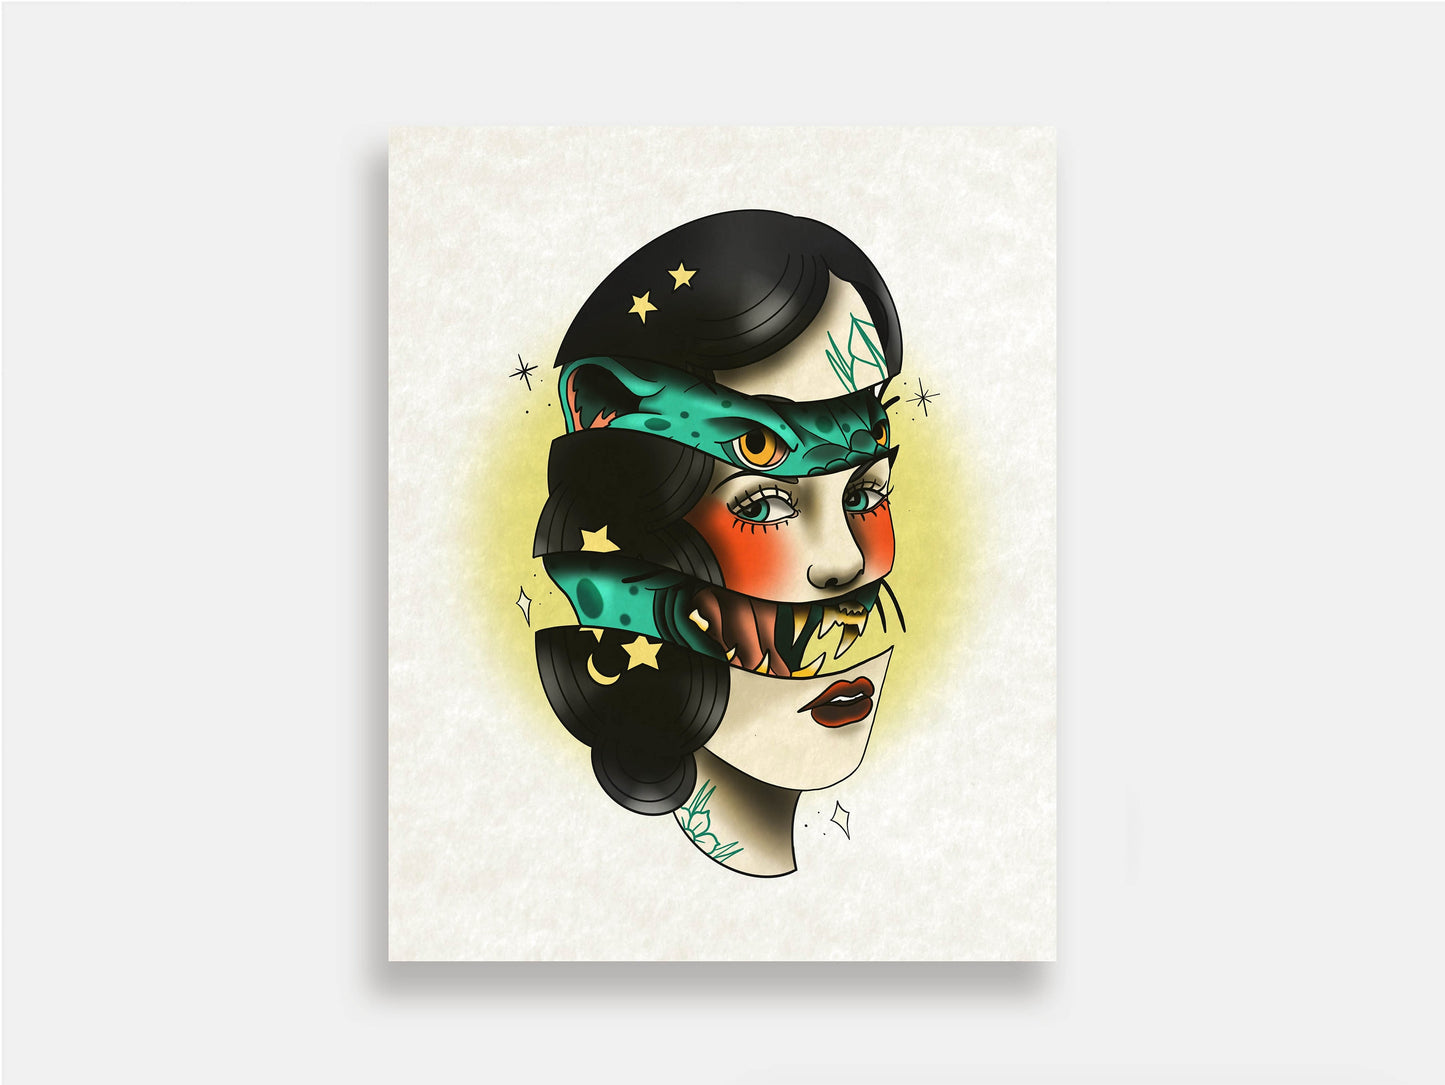 Tattoo Style Art Print - Jaguar Woman